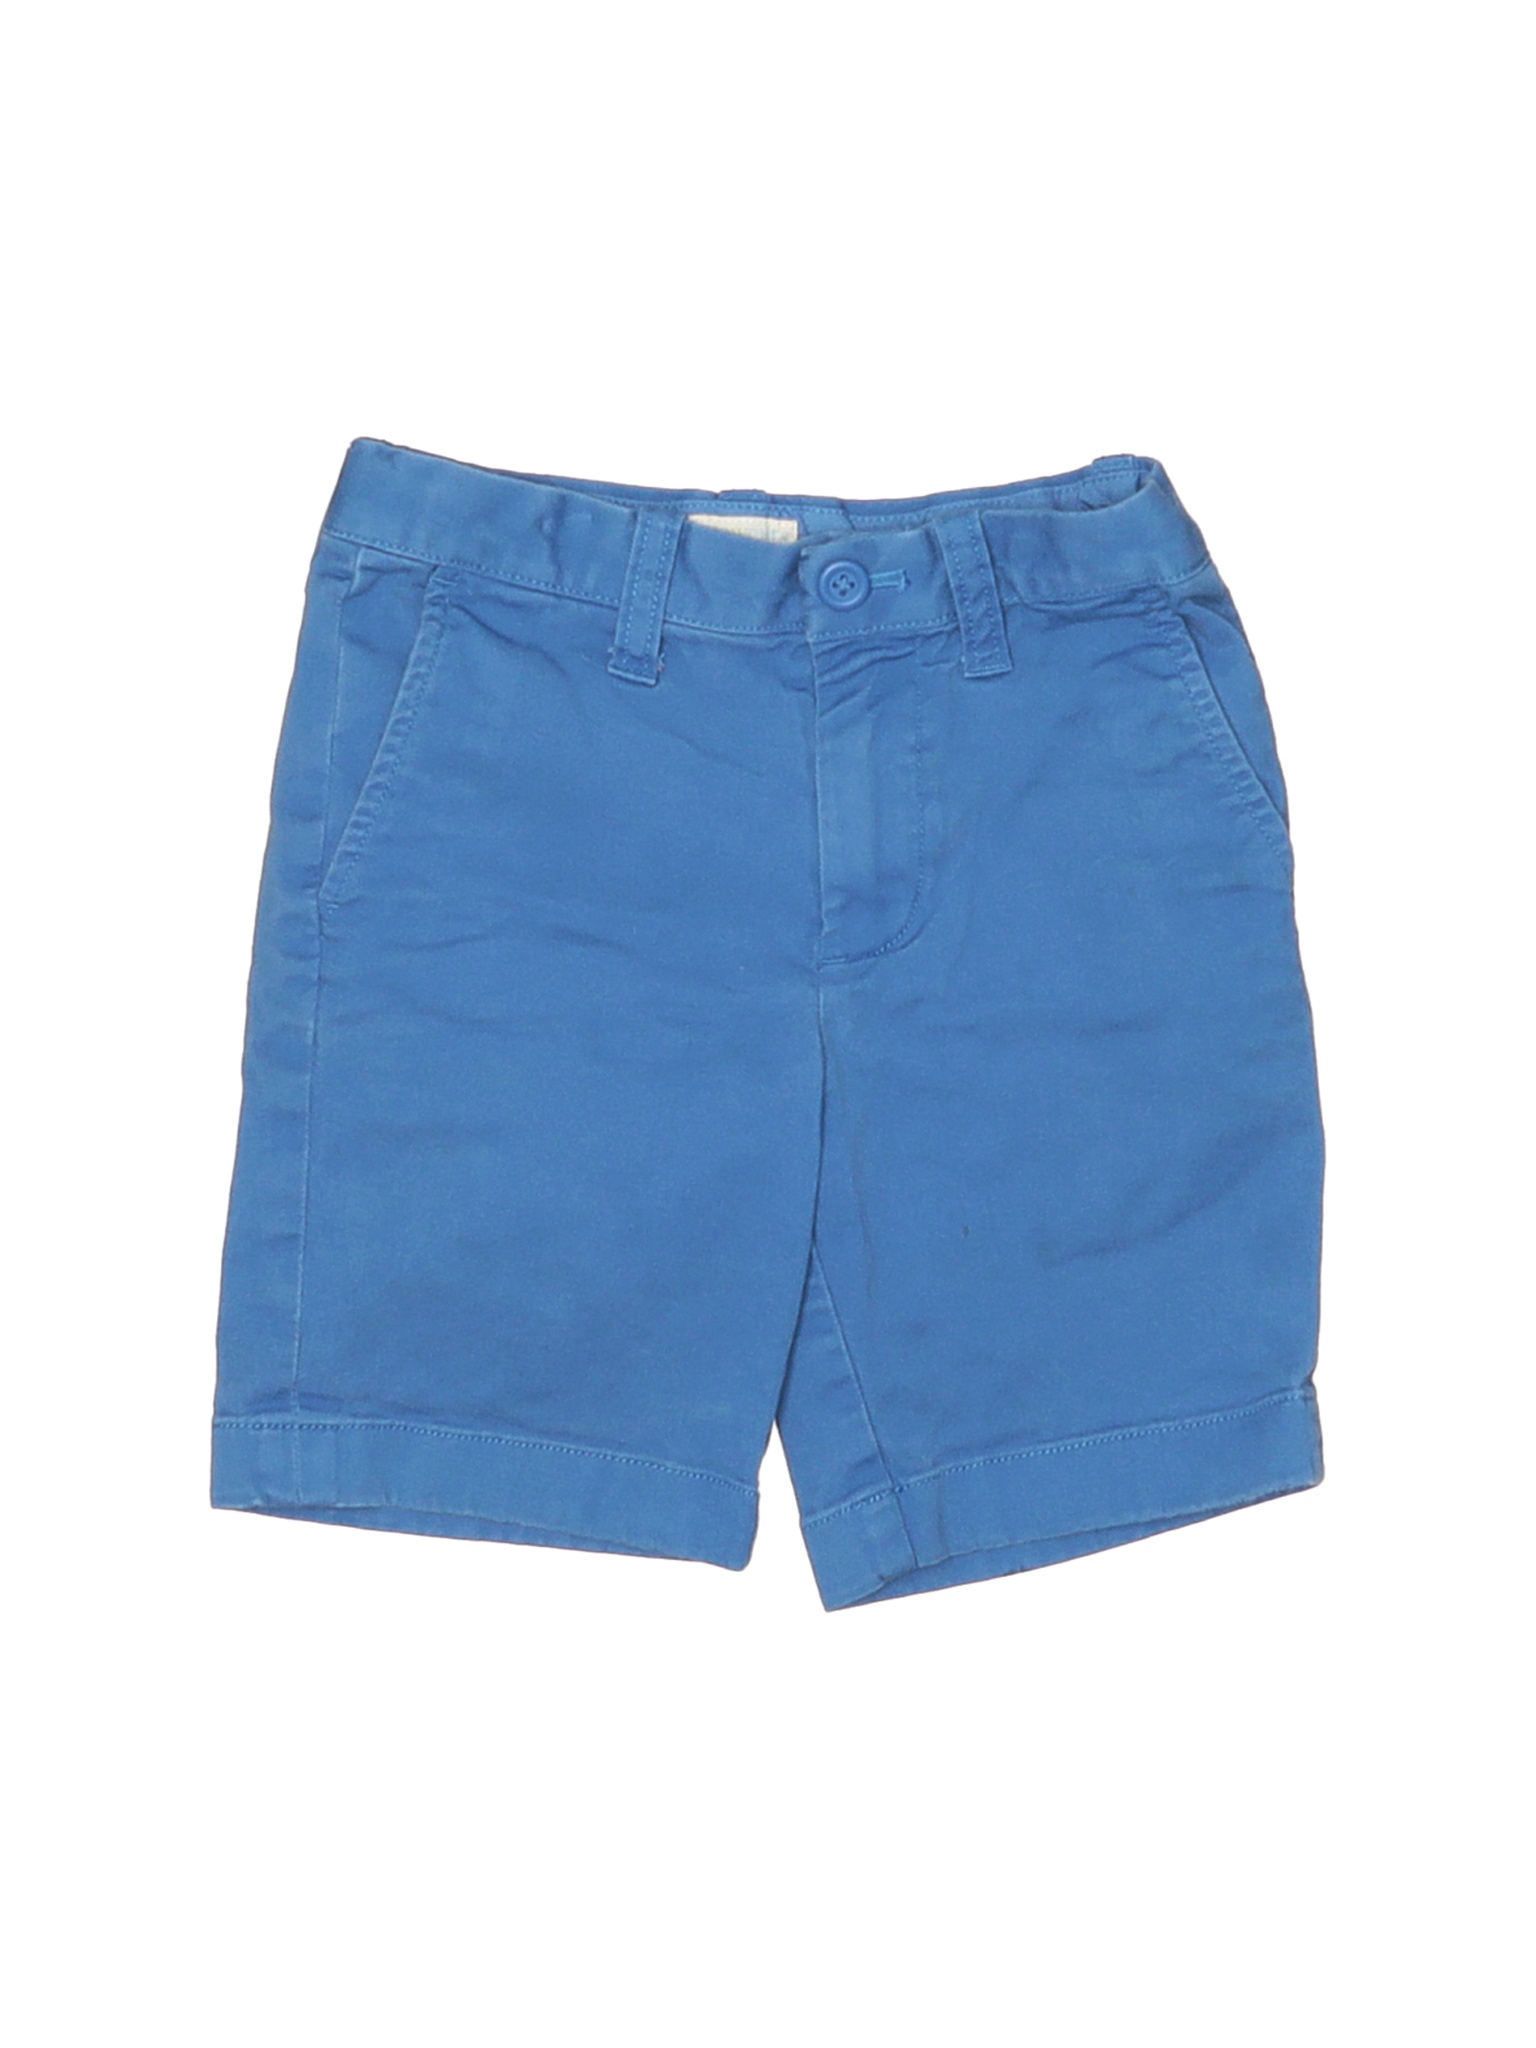 Crewcuts Outlet Boys Blue Khaki Shorts 5 | eBay